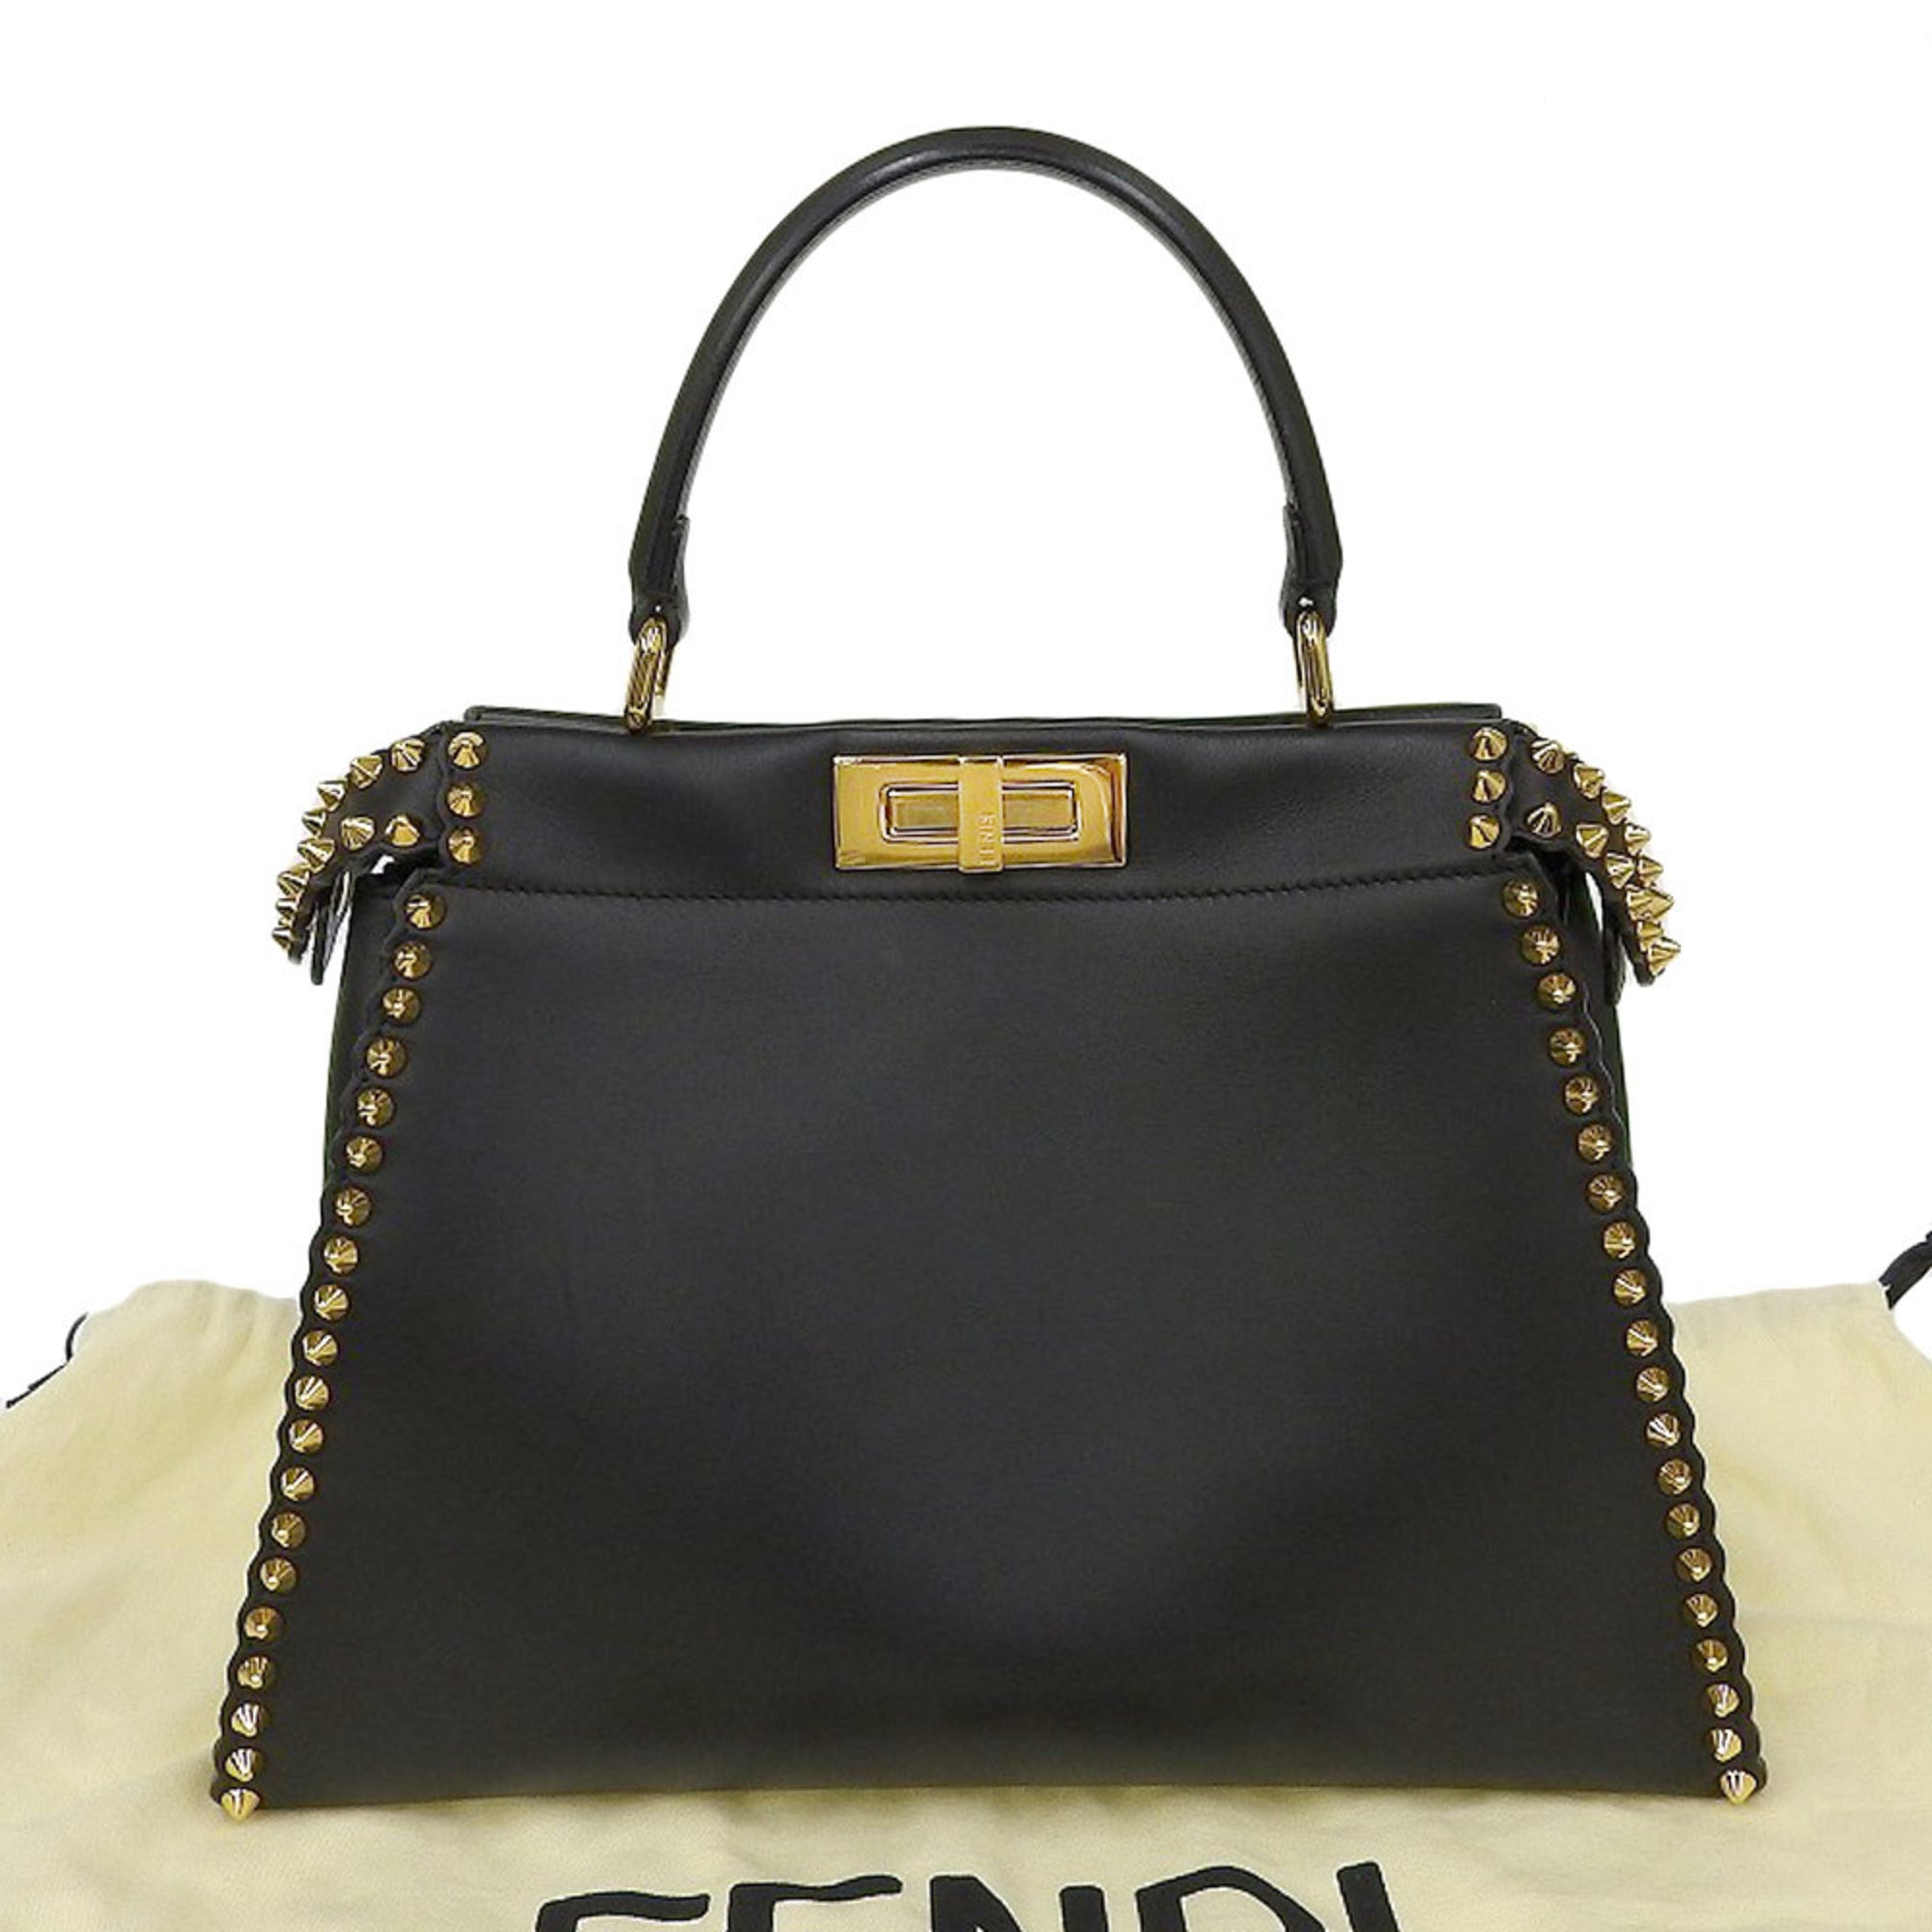 Fendi FENDI peekaboo studs handbag leather black-0